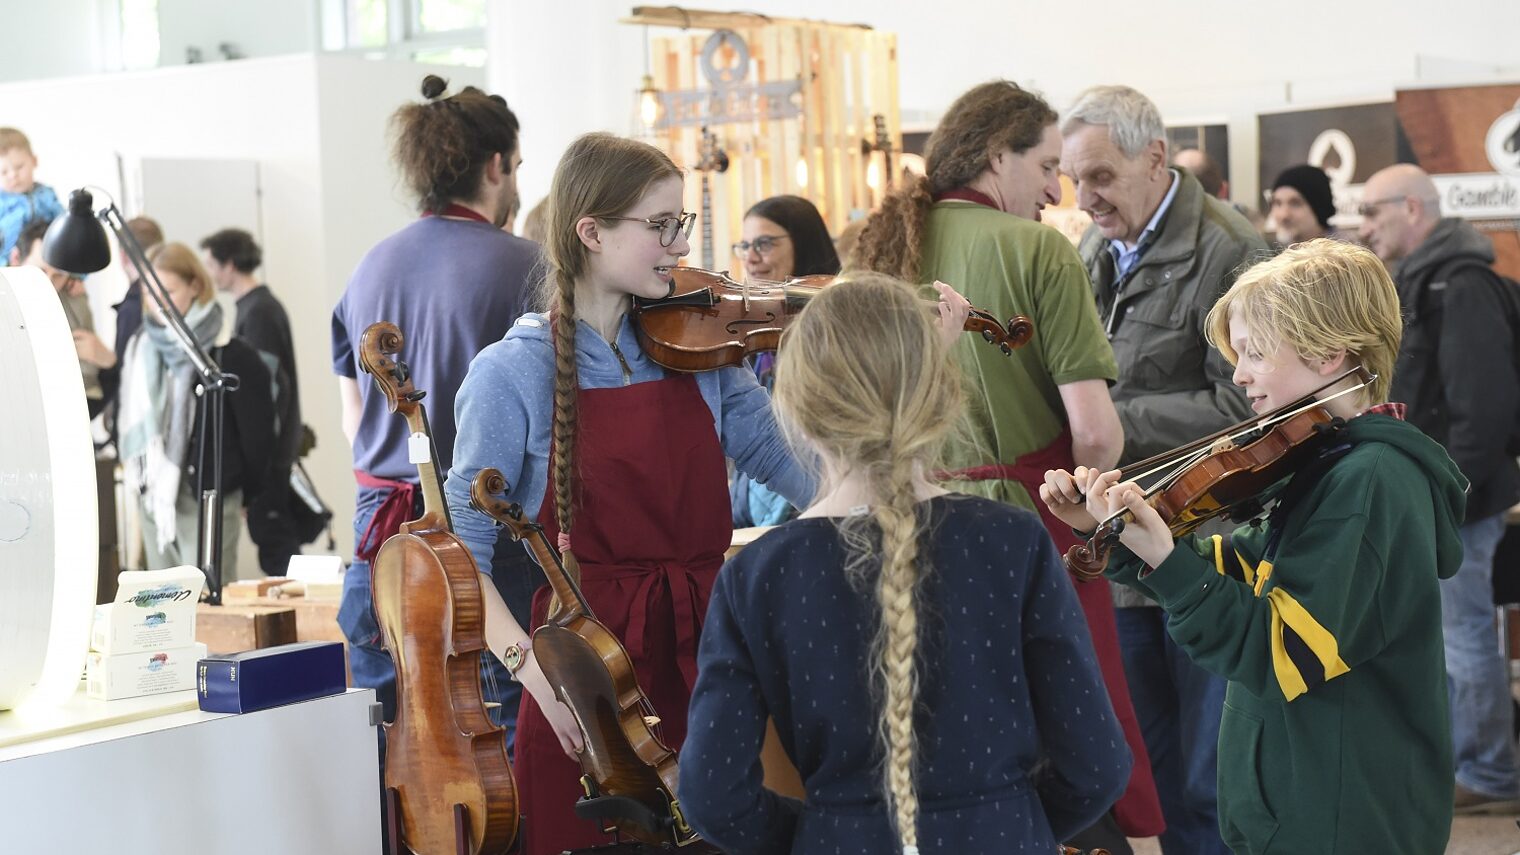 Kinder am Stand eines Geigenbauers